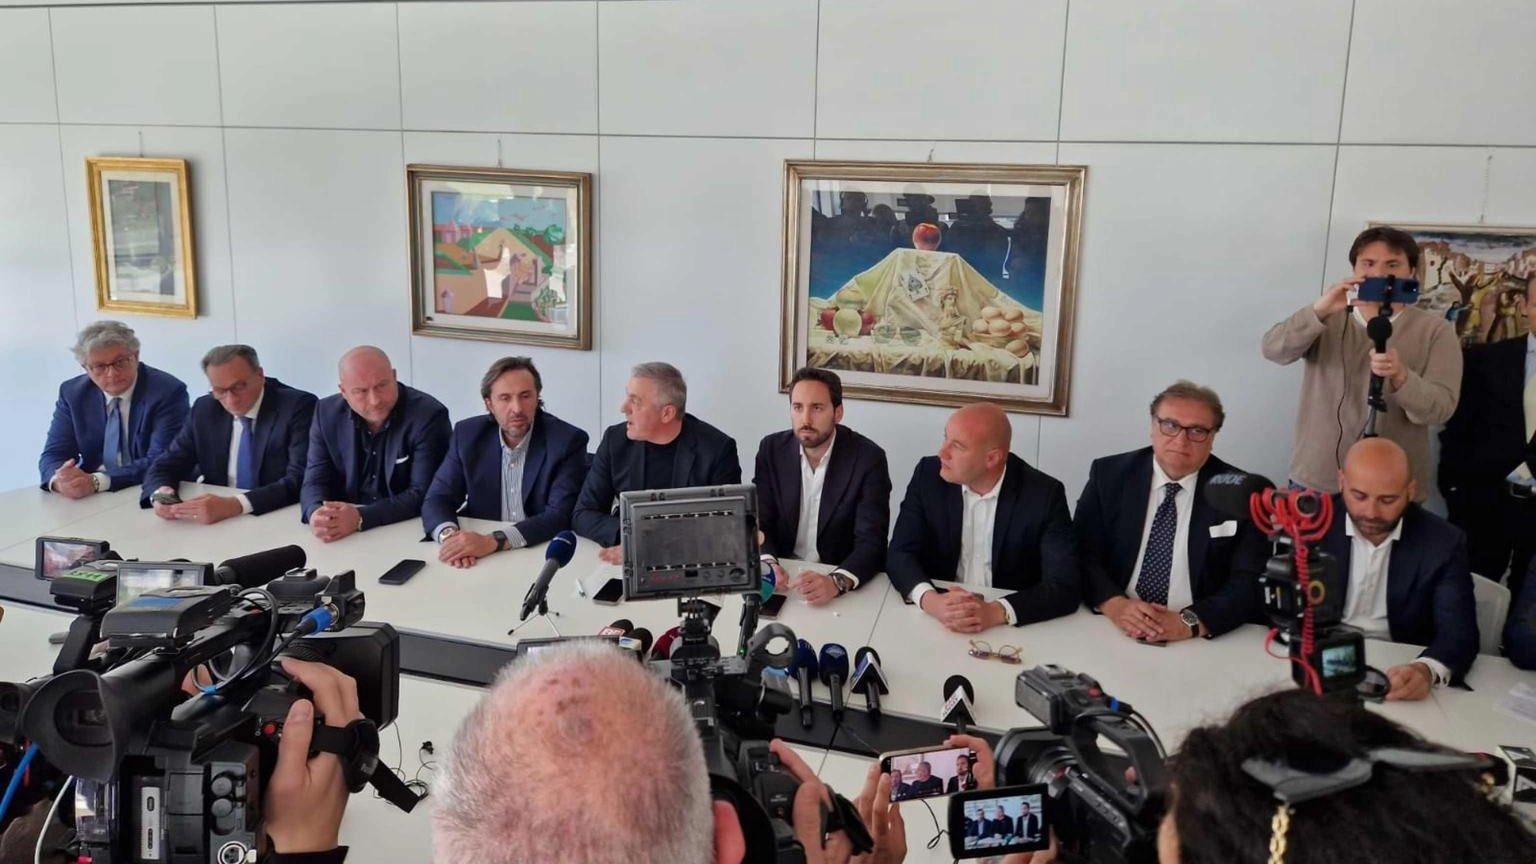 Fratelli d'Italia, Forza Italia, Lega e La Puglia domani contro il presidente della Regione dove il centrosinistra è stato coinvolto in diverse inchieste